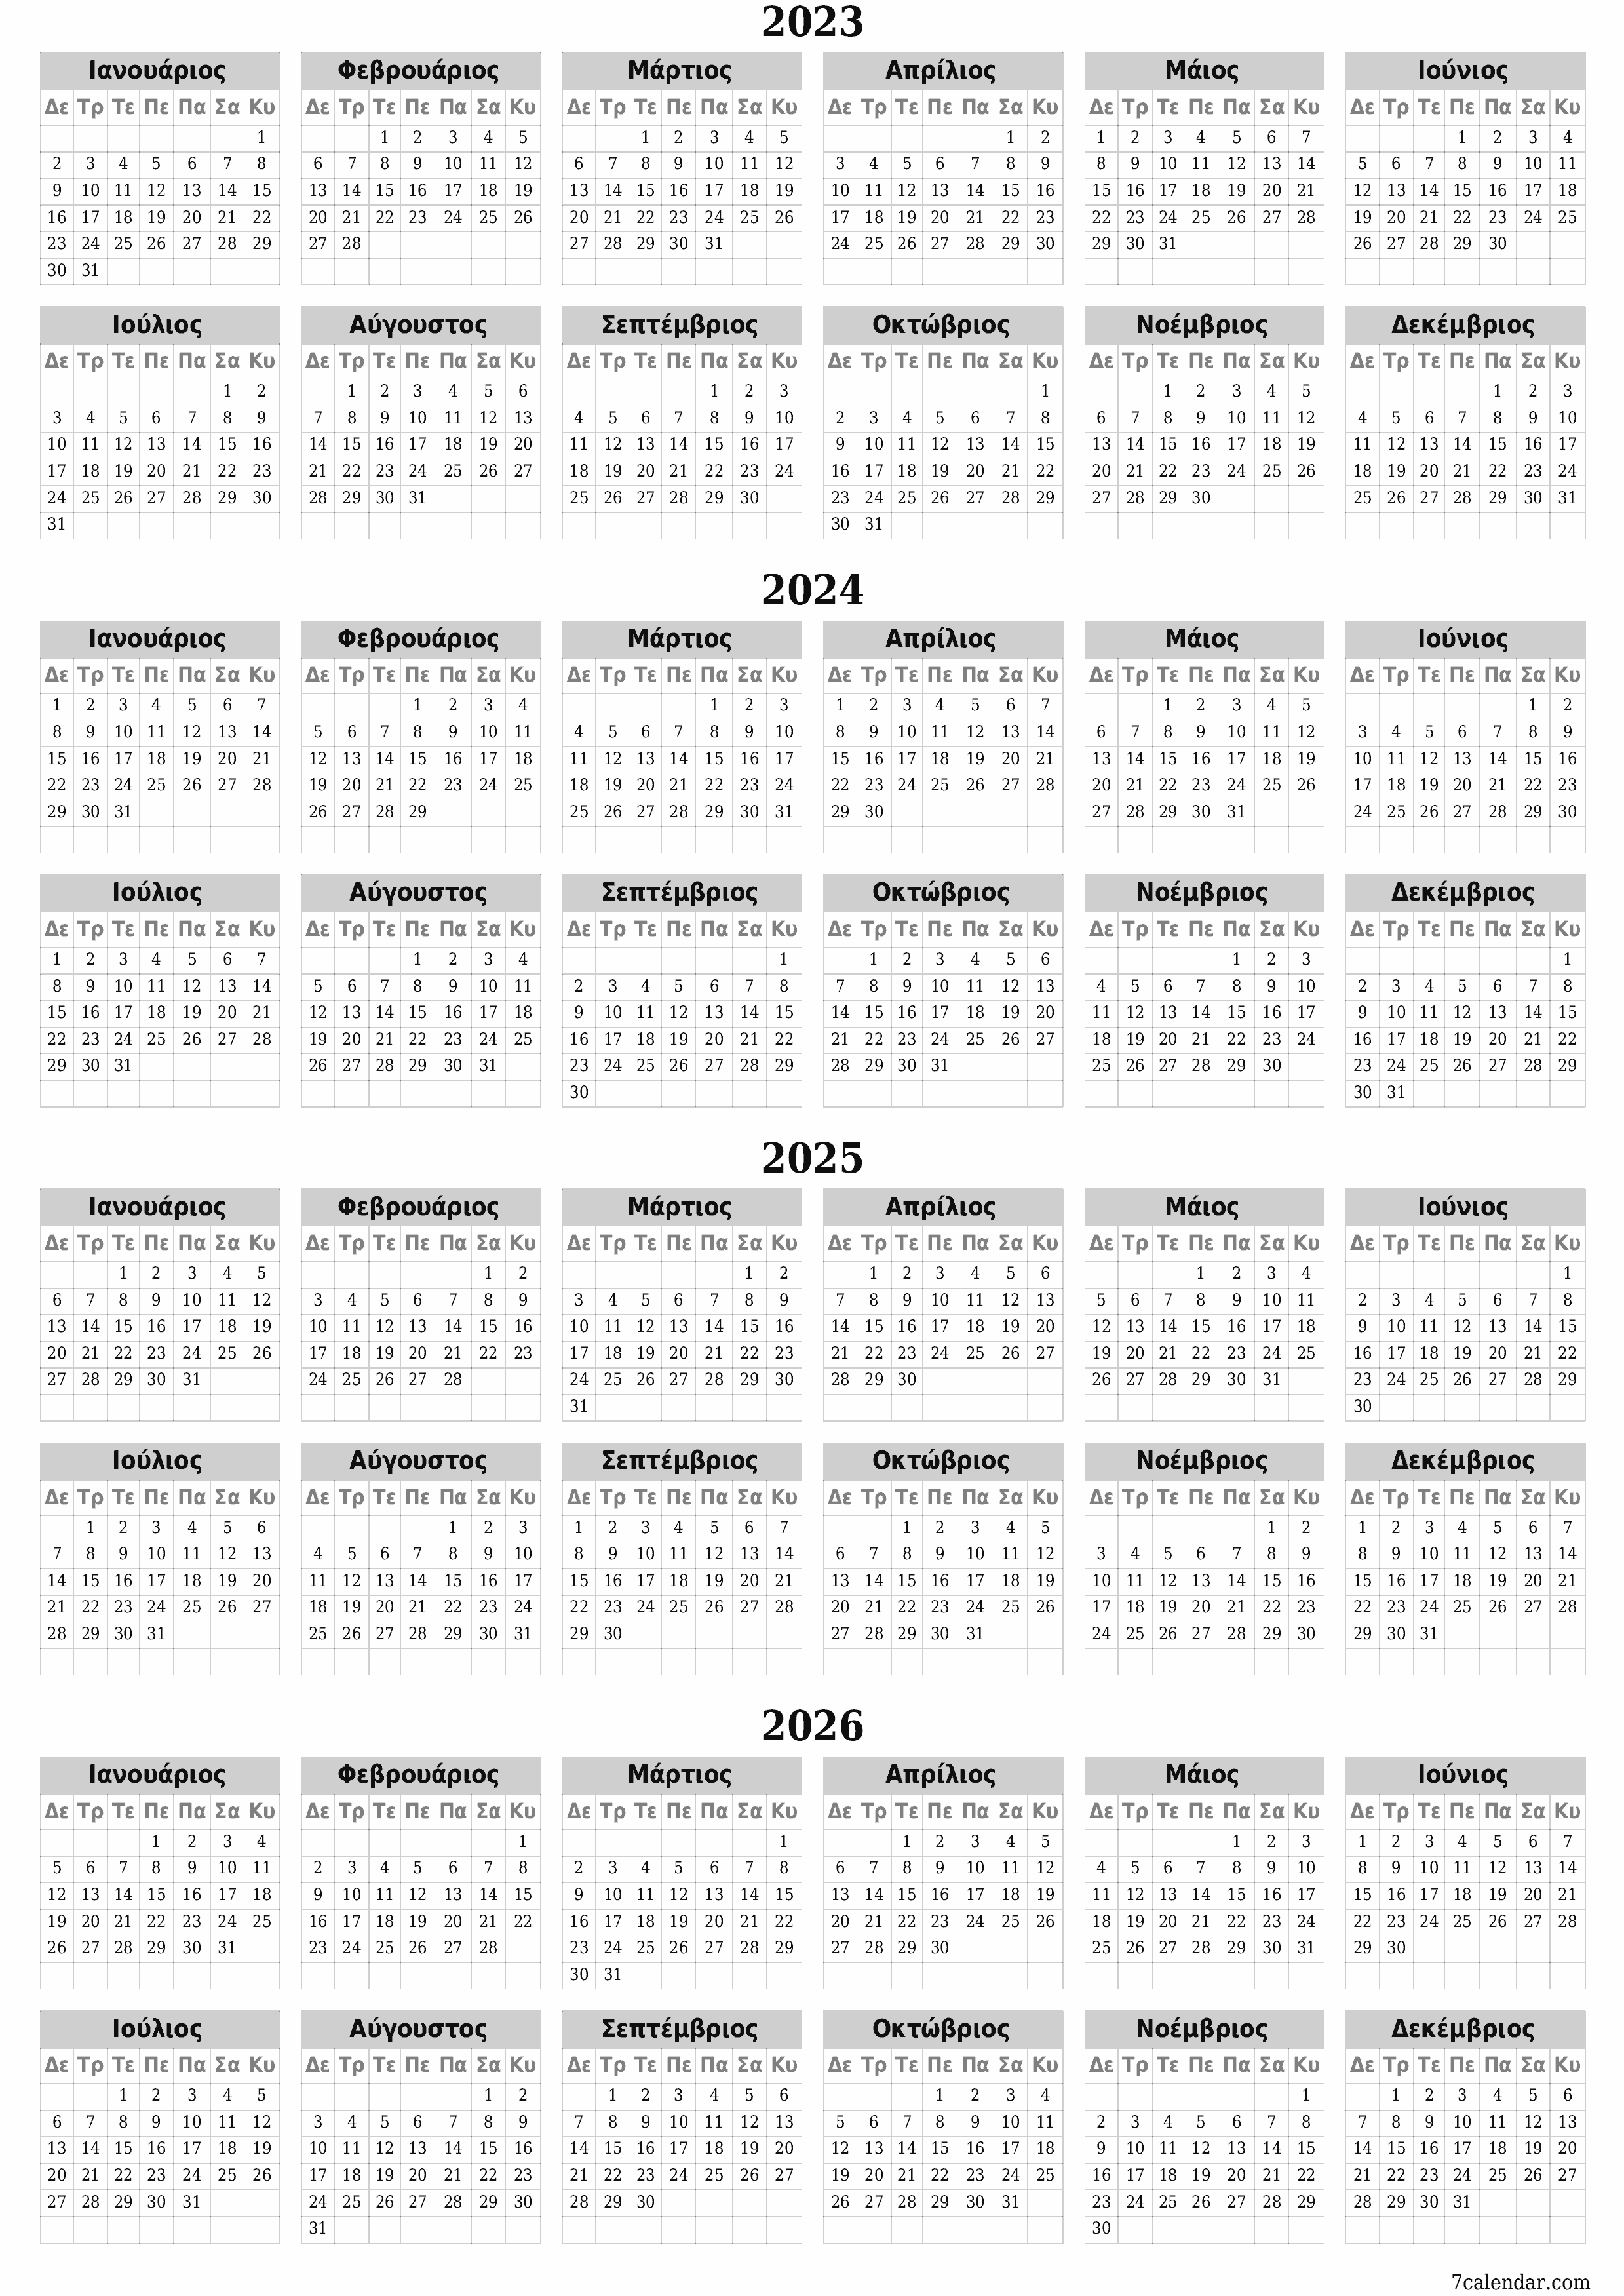 εκτυπώσιμο ημερολόγιο ημερολόγιο τοίχου πρότυπο ημερολογίου δωρεάν ημερολόγιοκατακόρυφος Ετήσιο Ημερολόγιο Νοέμβριος (Νοε) 2023